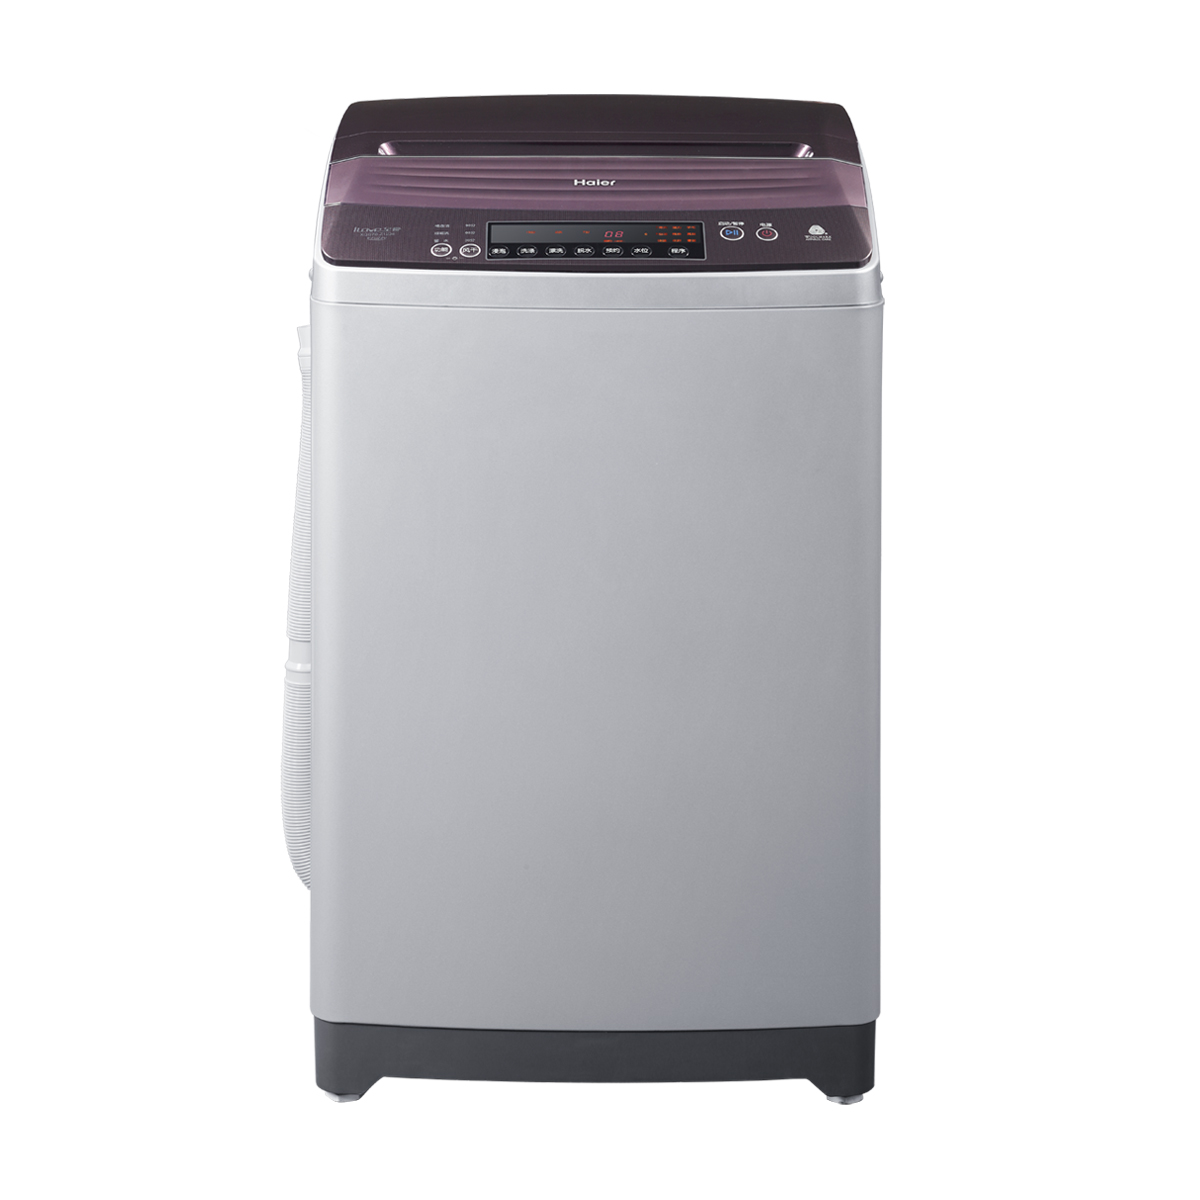 海尔Haier洗衣机 XQS70-Z1236 说明书